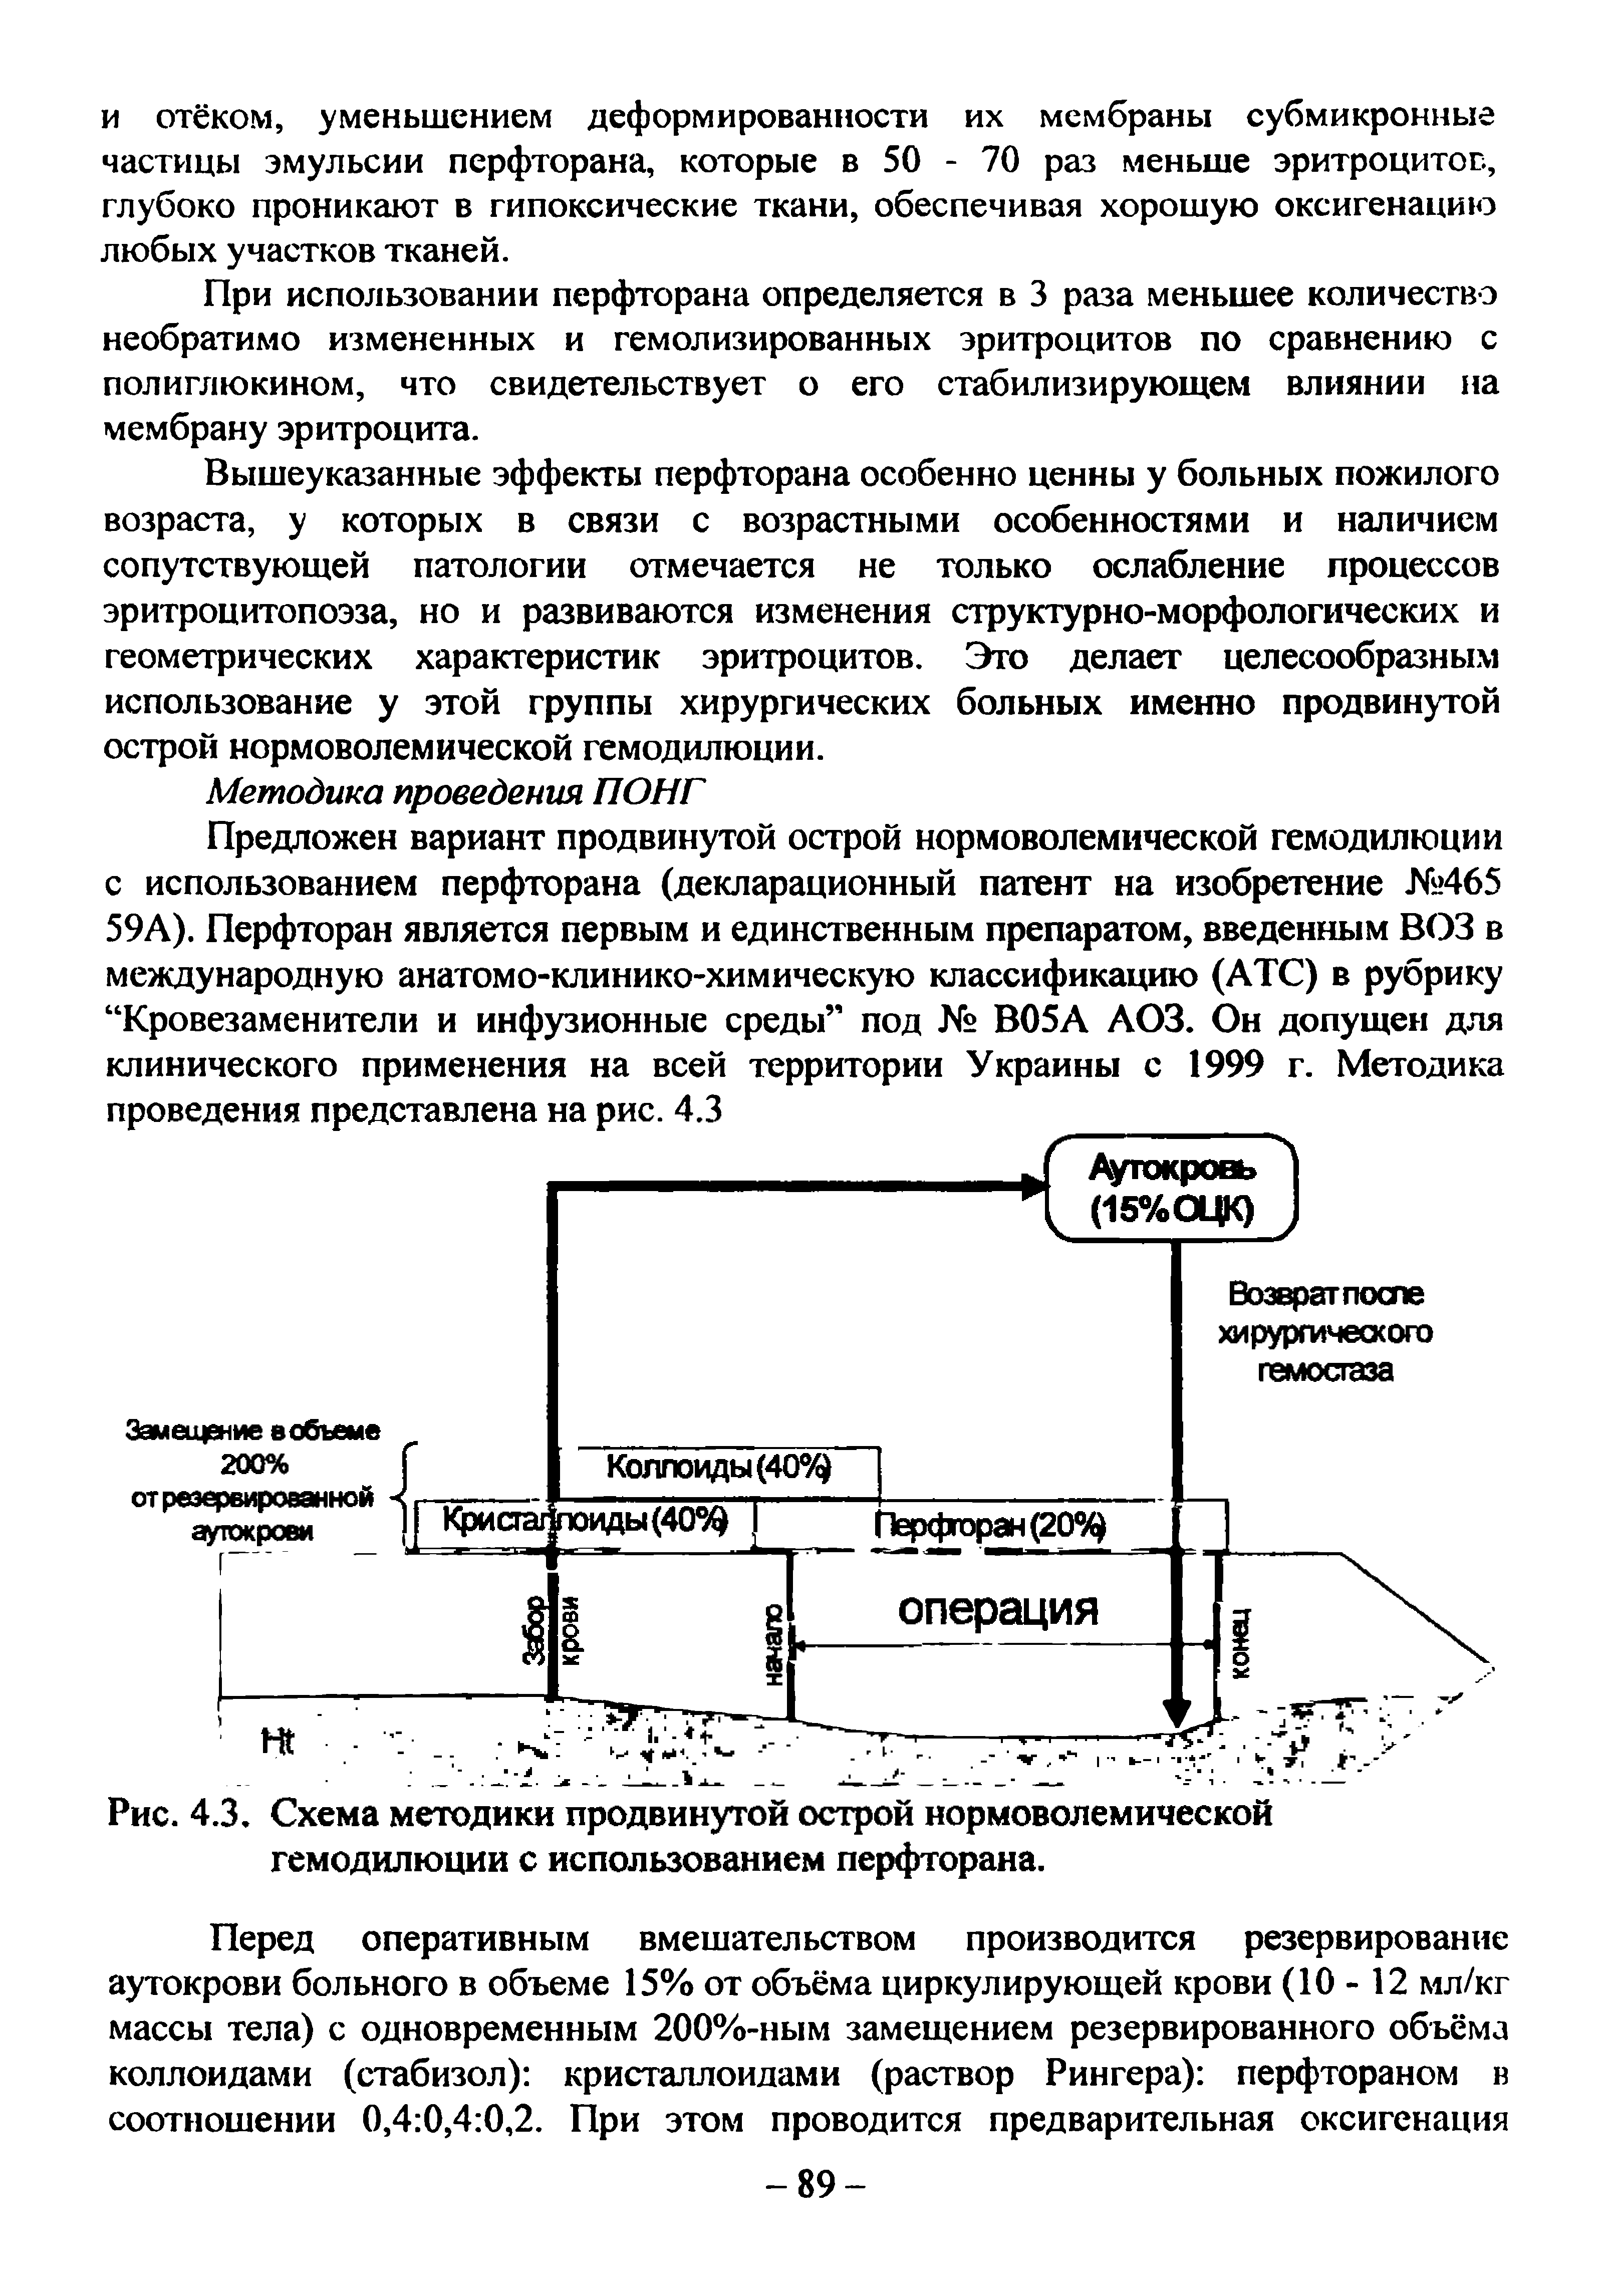 Рис. 4.3. Схема методики продвинутой острой нормоволемической гемодилюции с использованием перфторана.